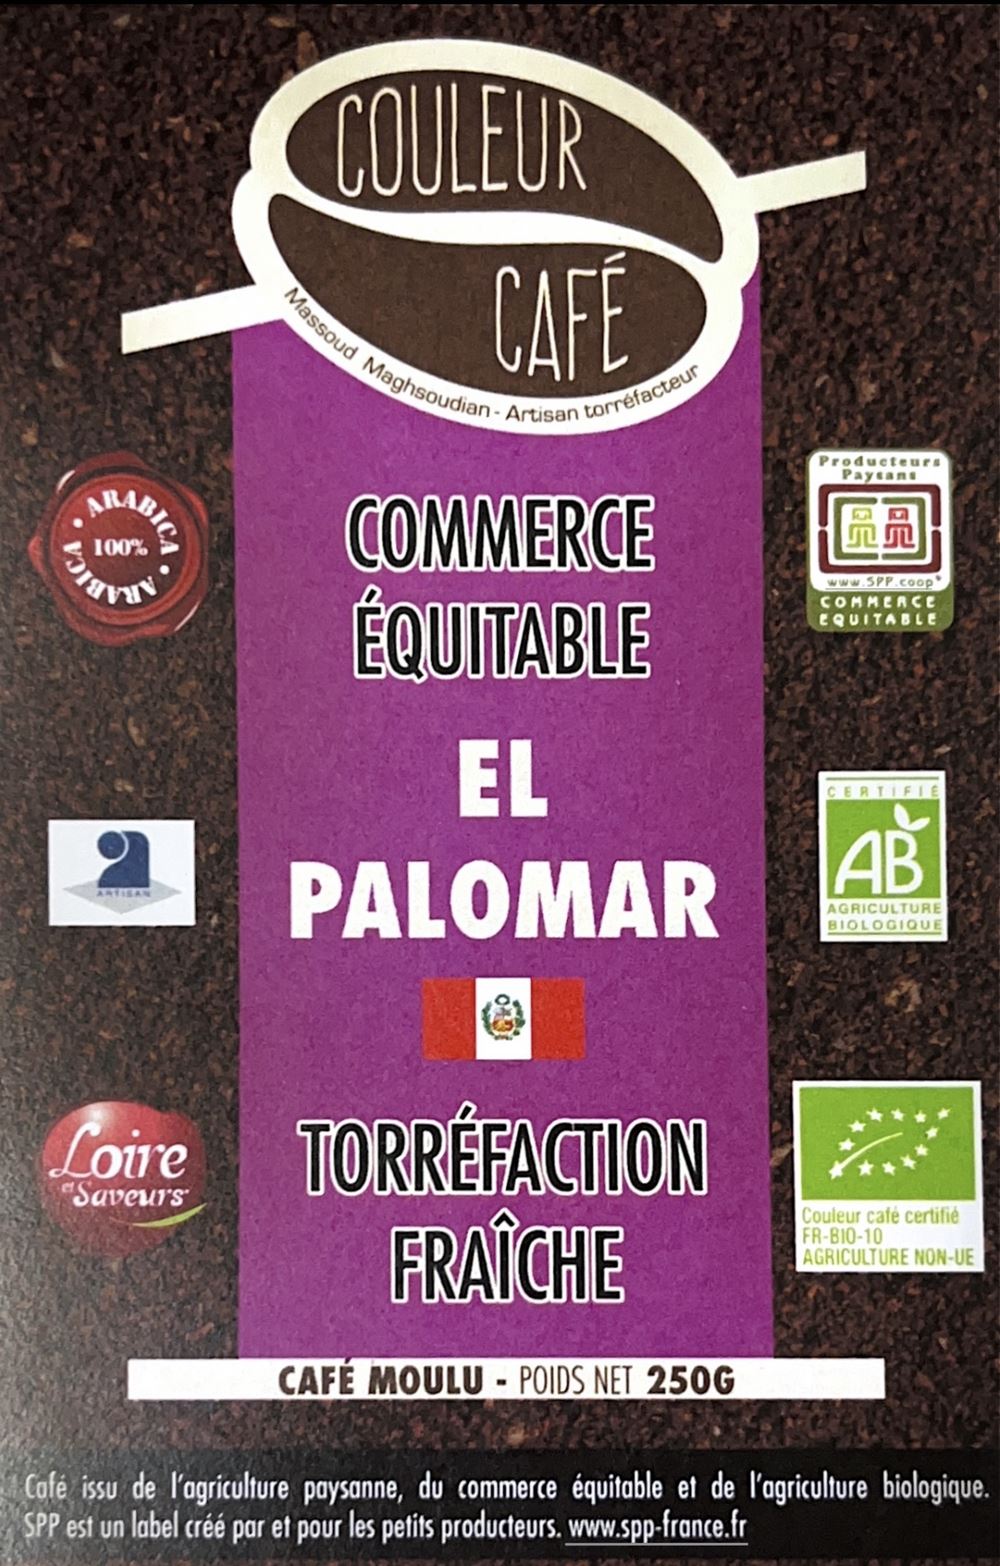 Café Pérou GRAINS bio & équitable - 1 kg